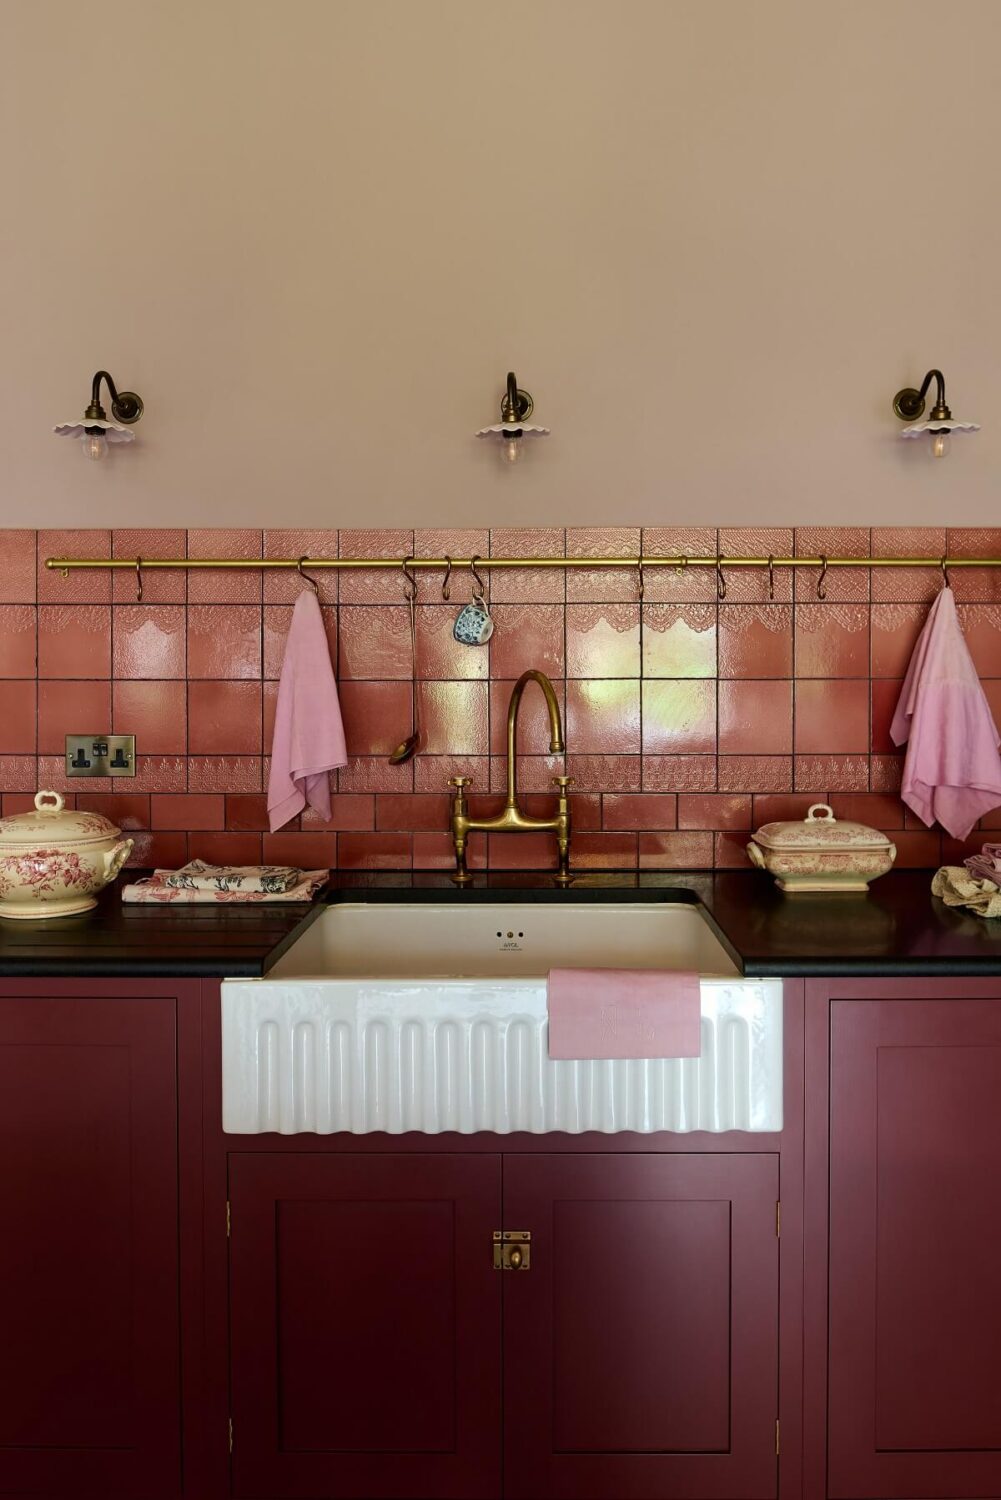 butler-sink-rose-lace-market-tiles-devol-kitchen-nordroom